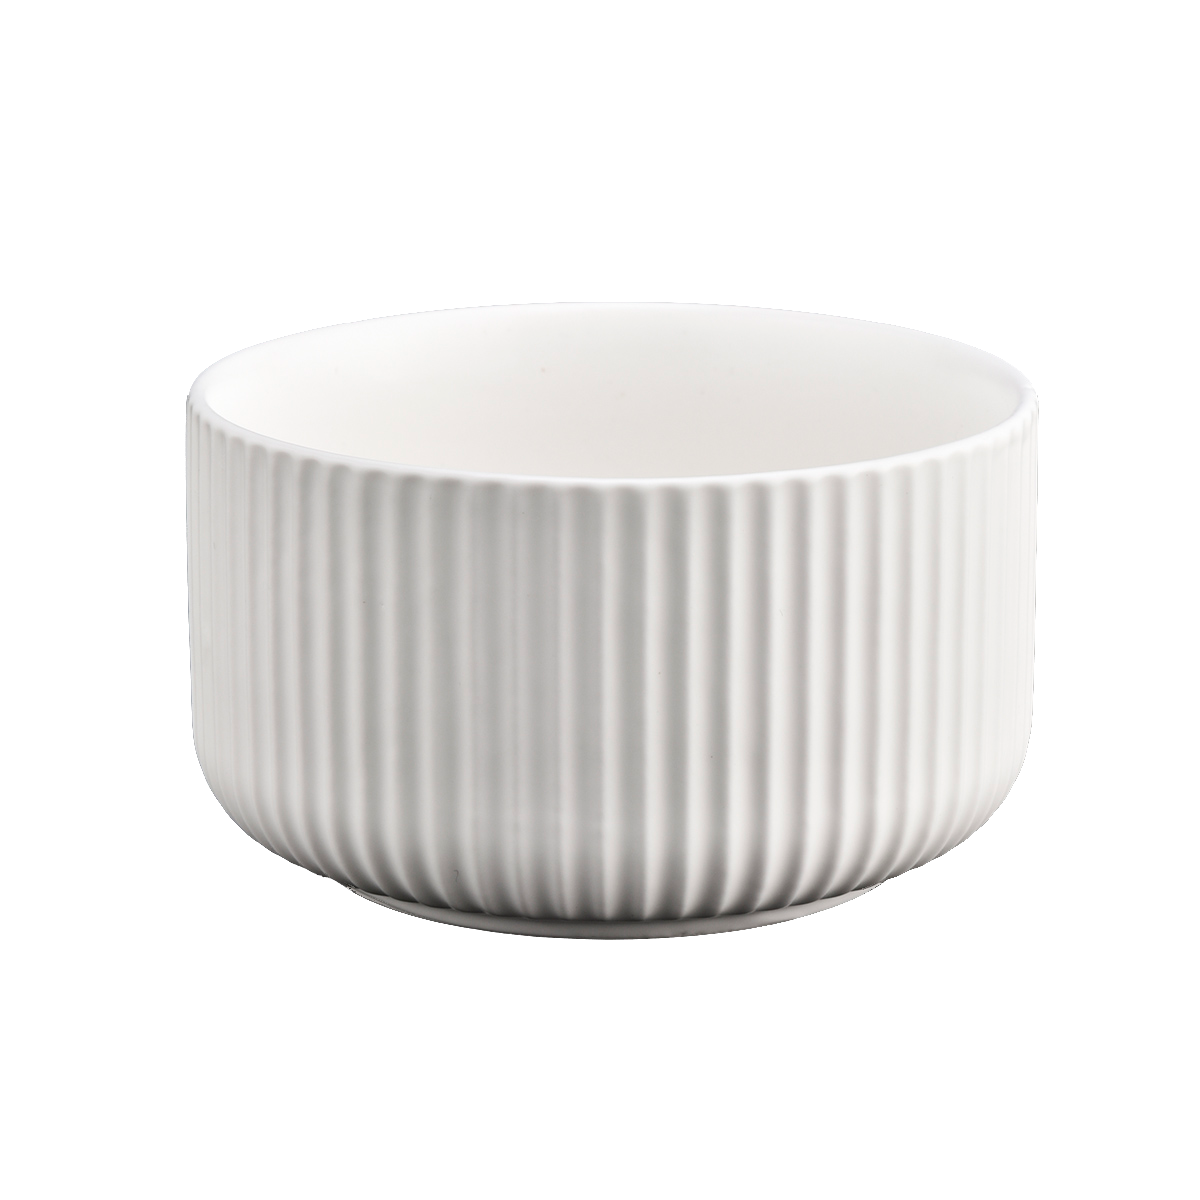 Matowy biały ceramiczny świecznik z liniami